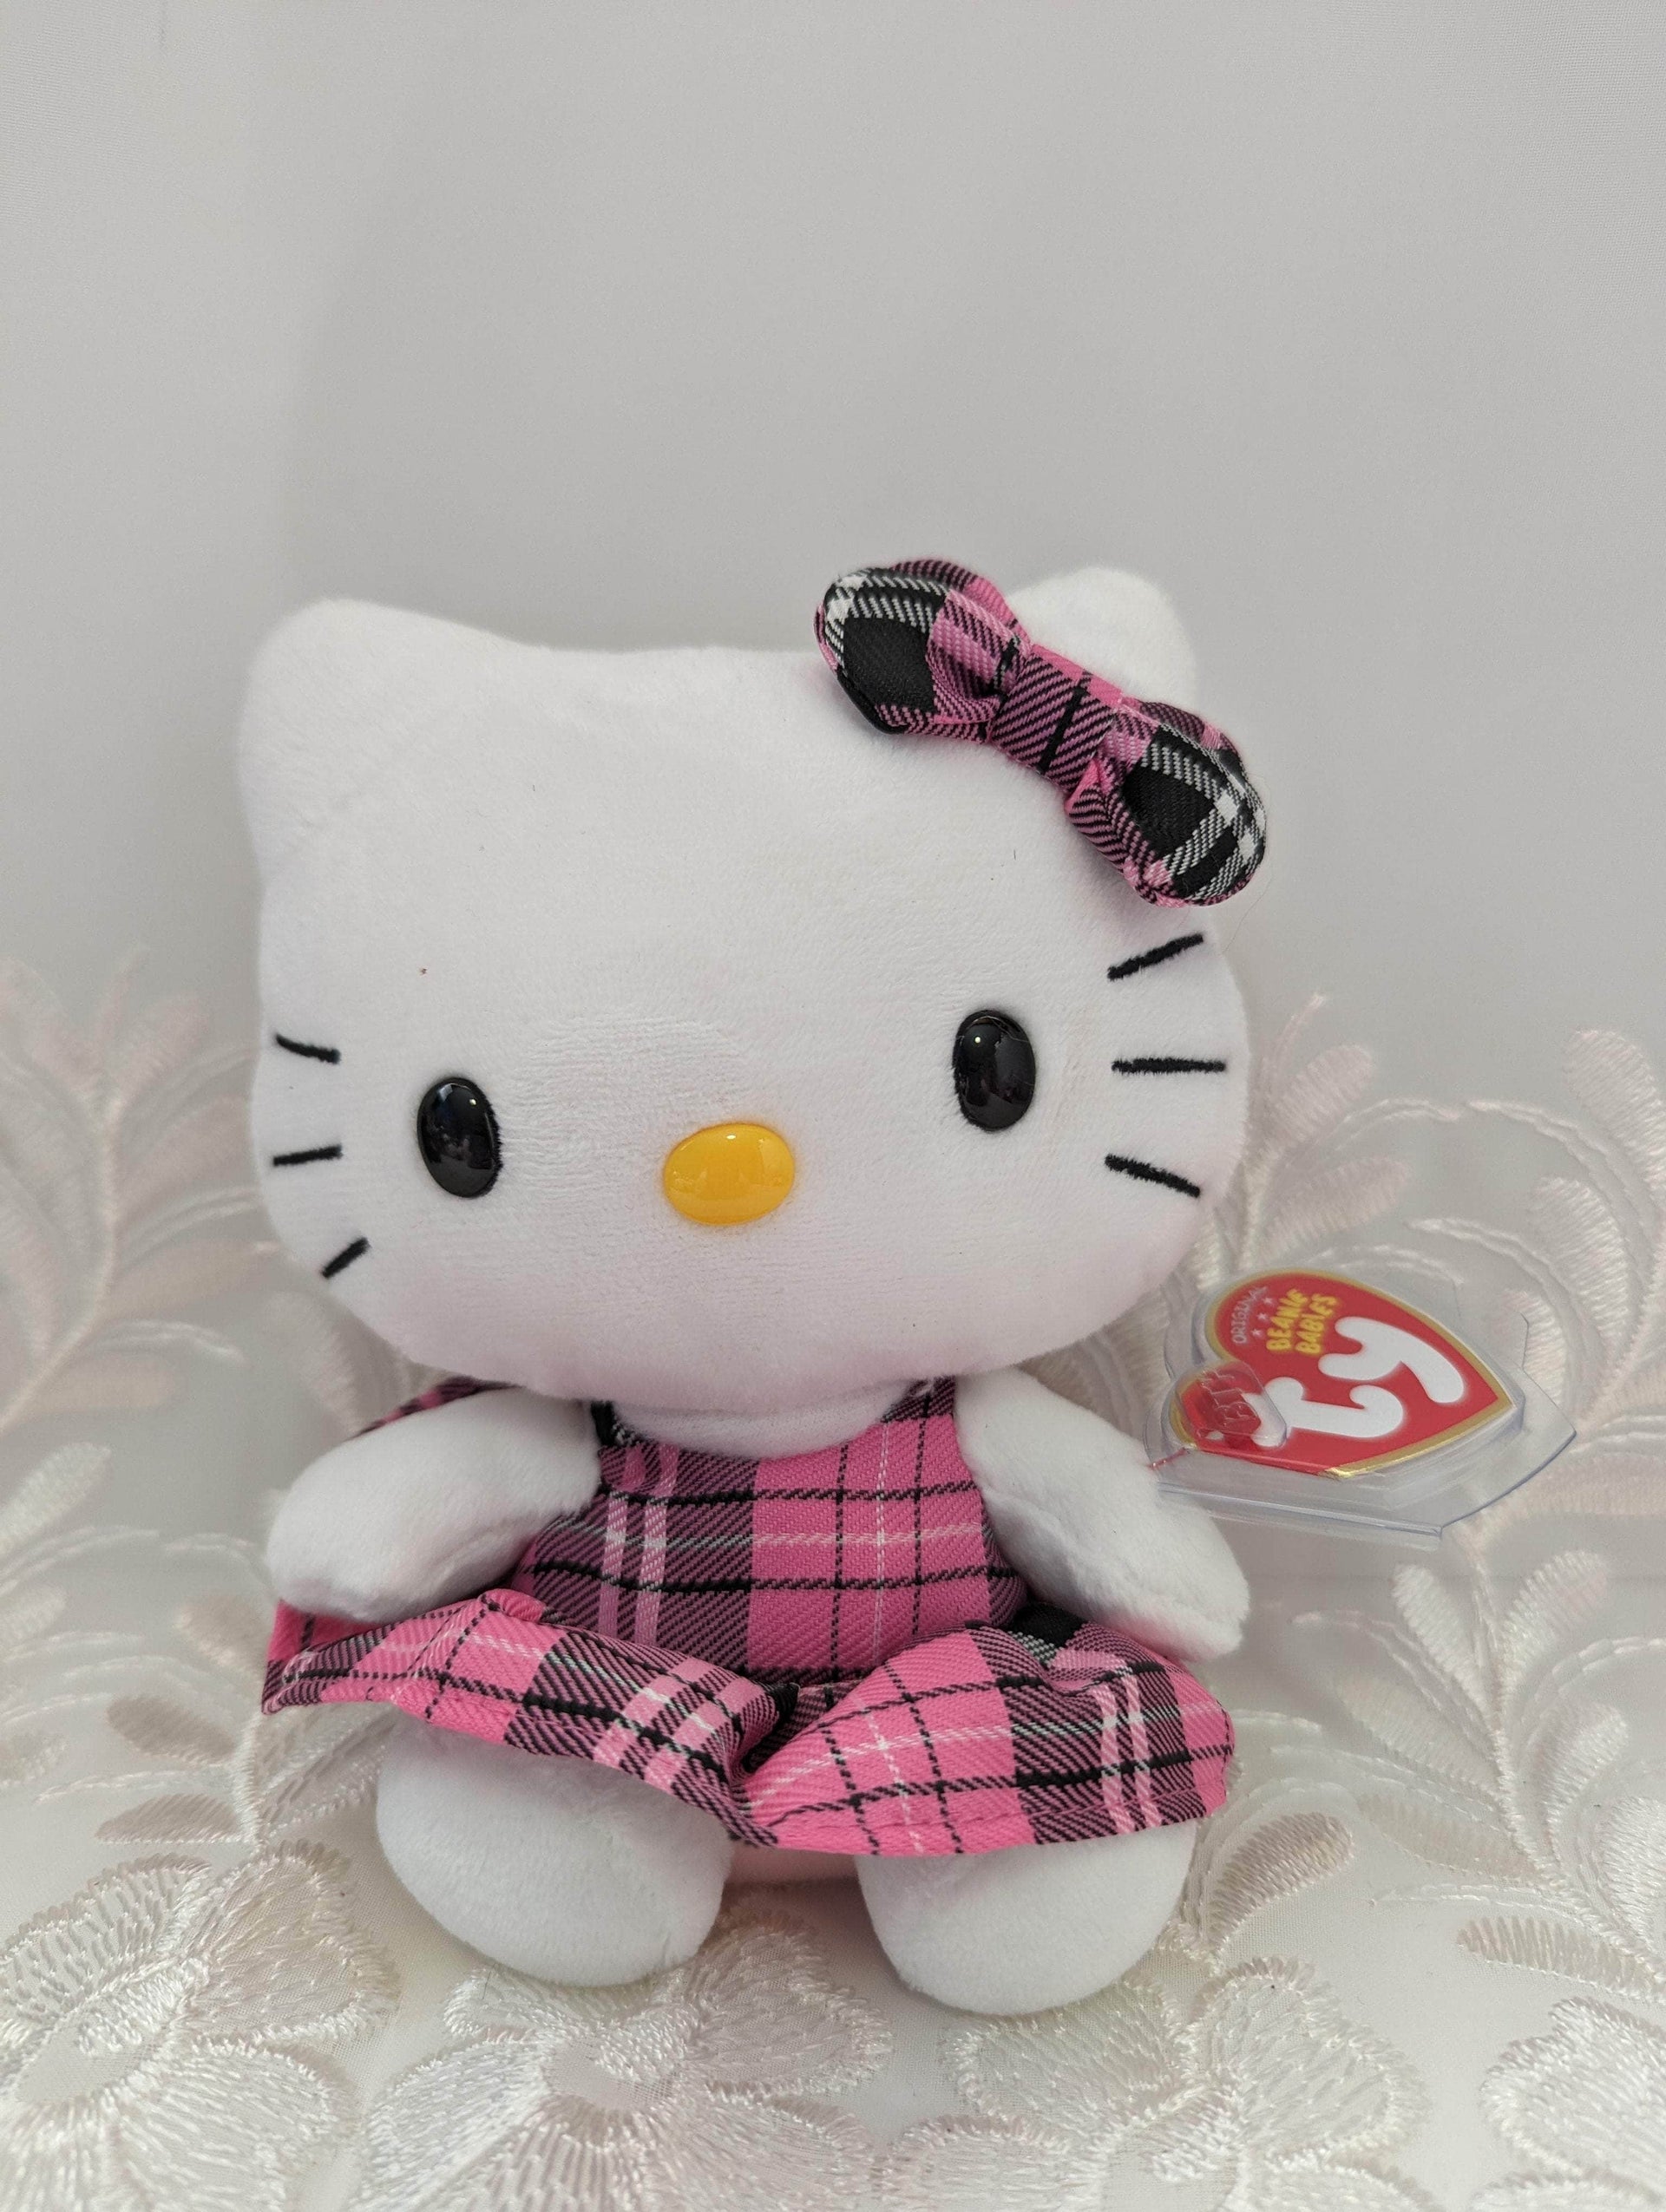 Hello Kitty-Sanrio-Pink Plaid Dress-The Beanie's Buddy Beanie Babies